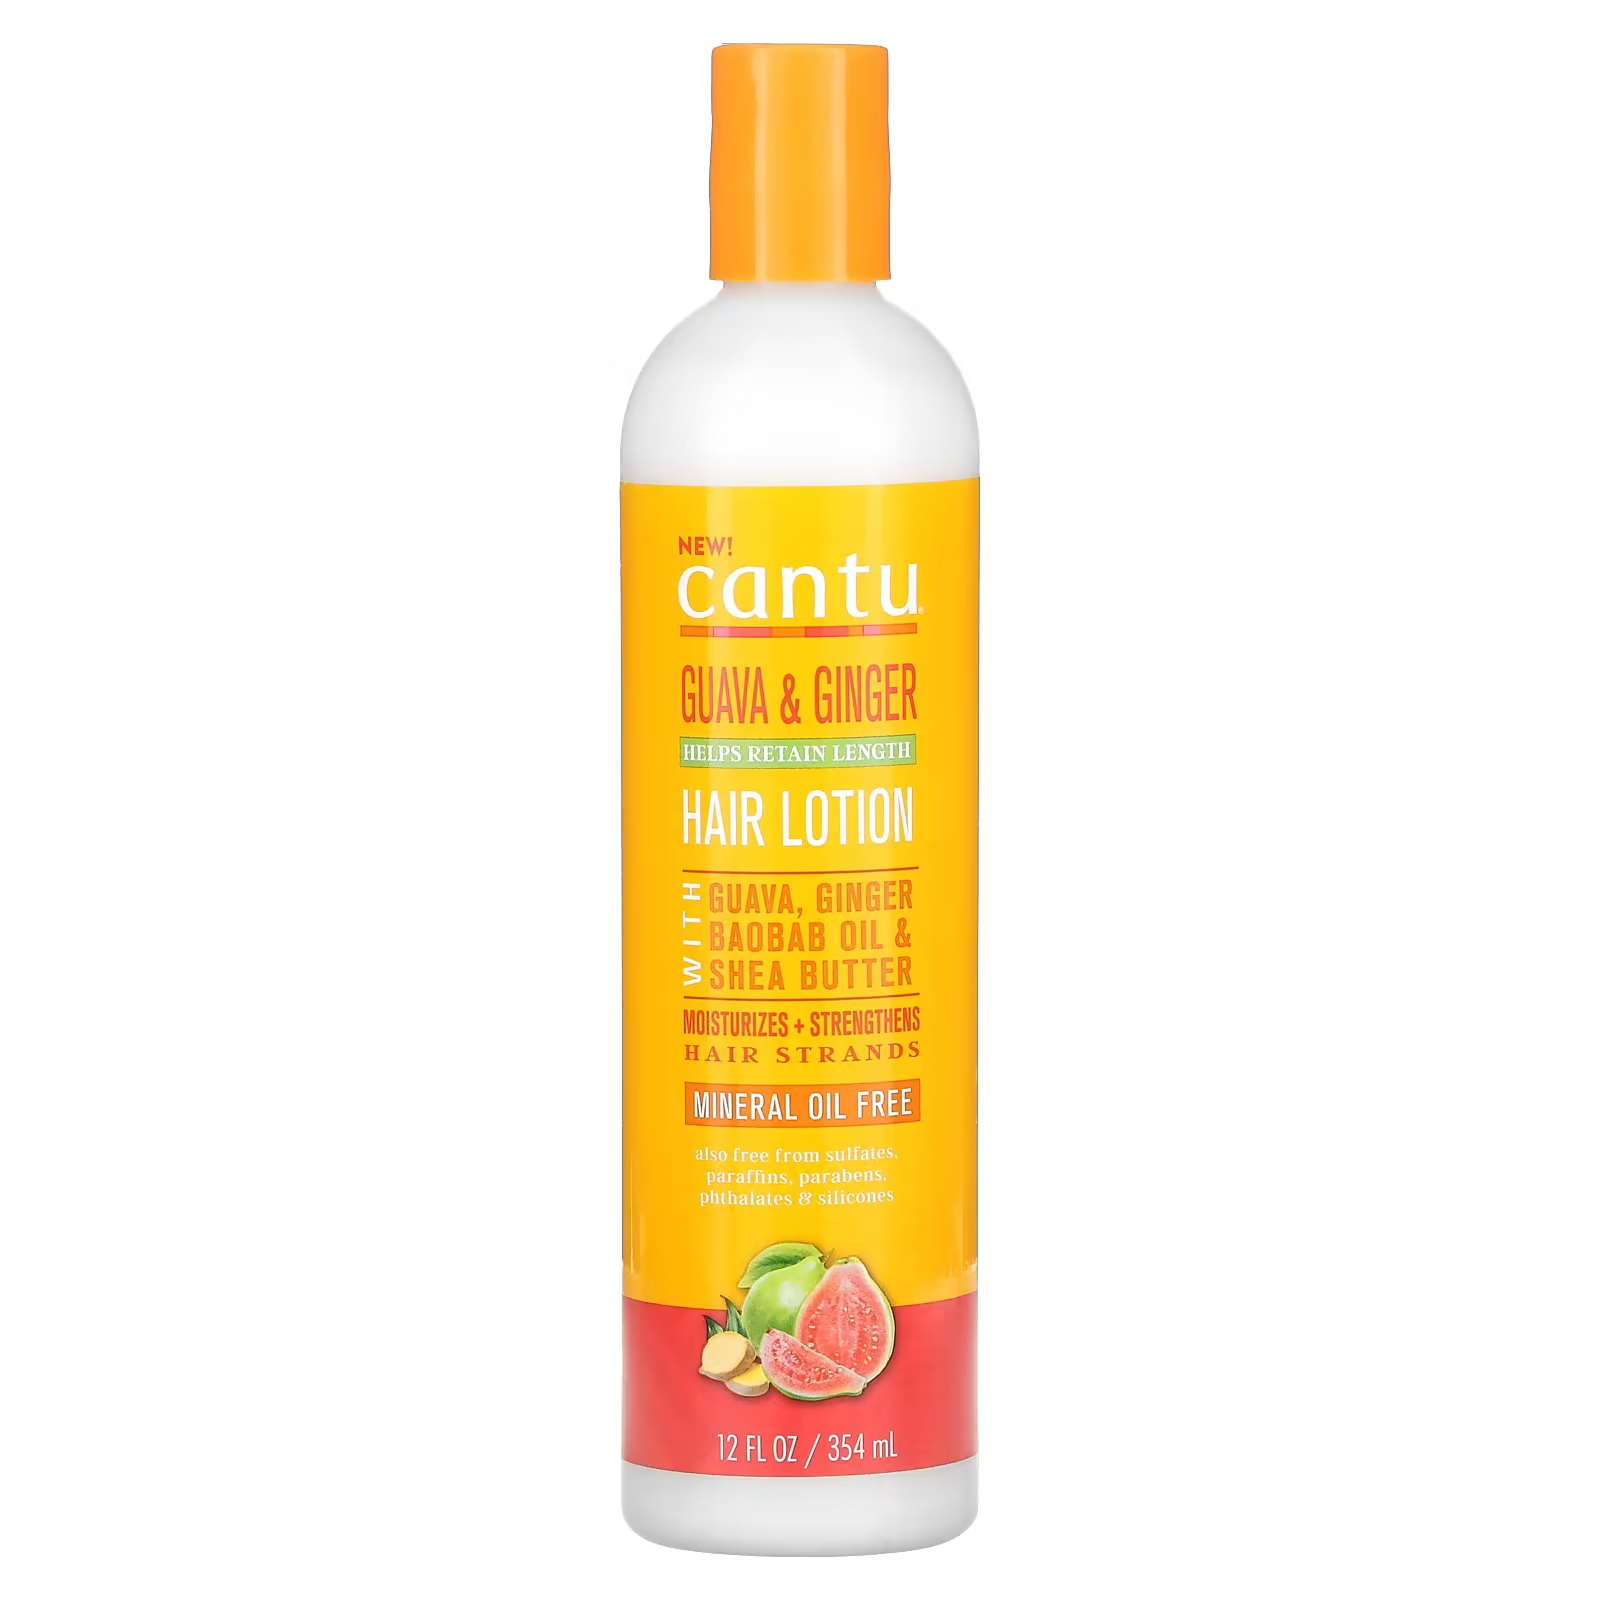 Лосьон Cantu Guava & Ginger для волос, 354 мл цена и фото